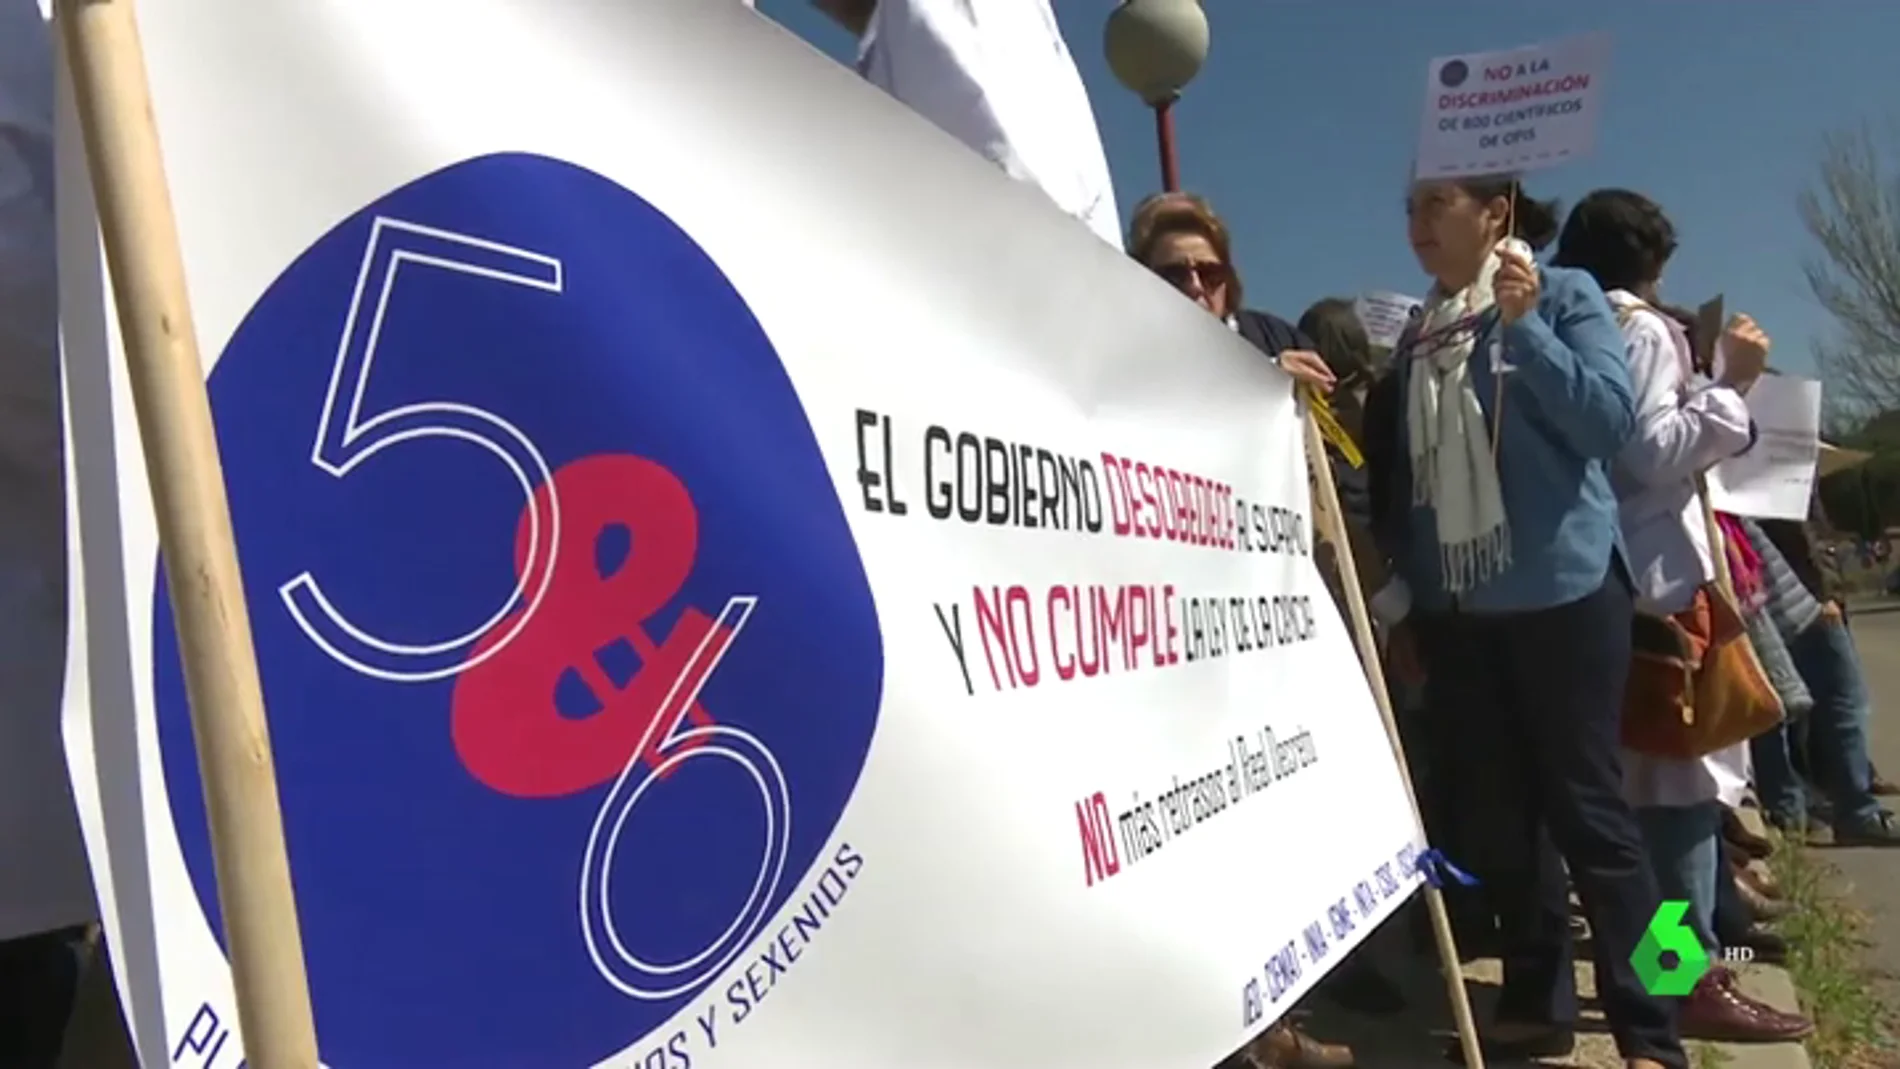 Más de un centenar de científicos protestan ante el Palacio de la Moncloa contra la marginación salarial que sufren